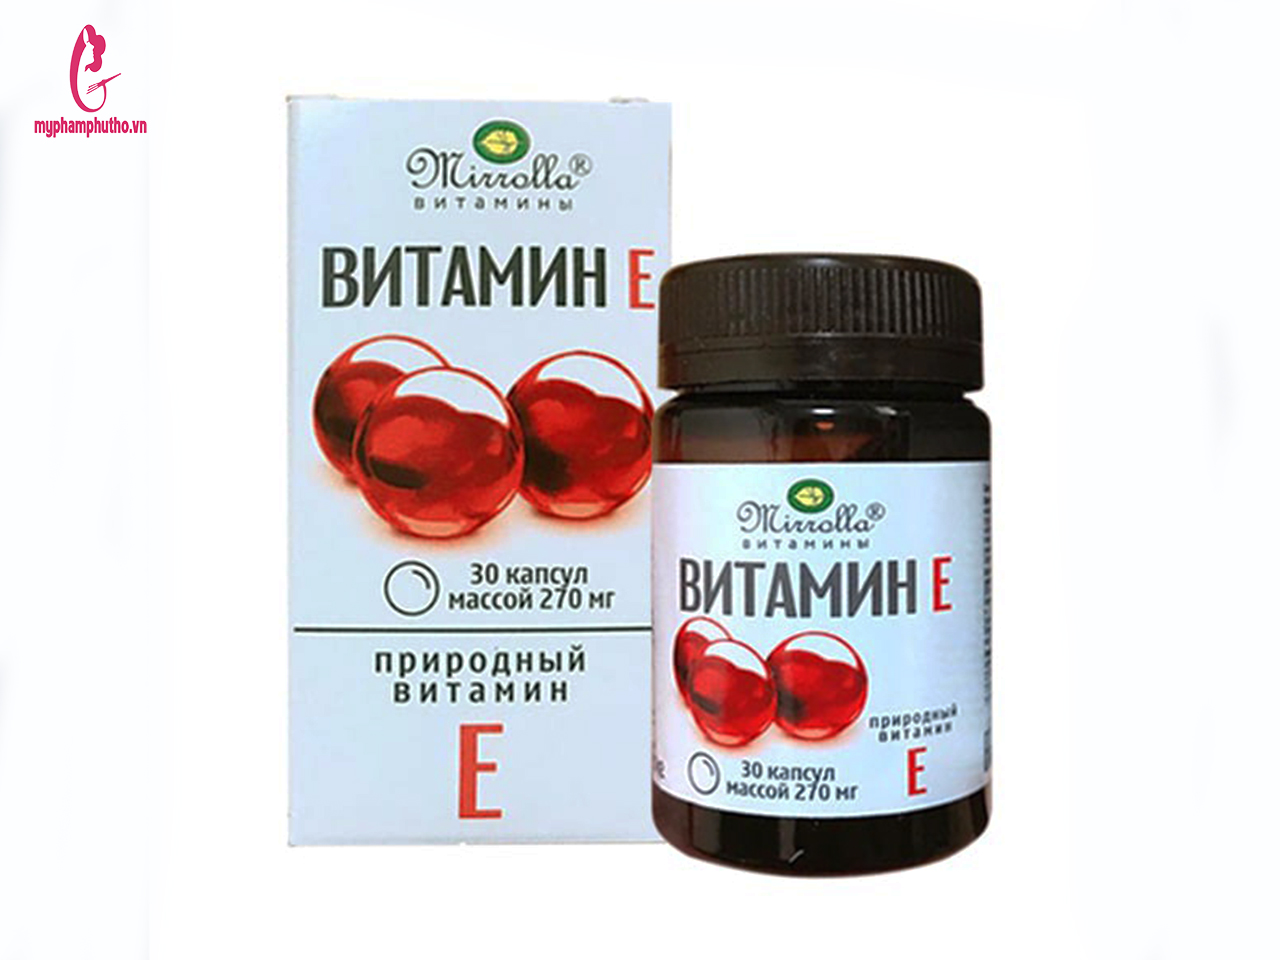 Hộp viên uống Vitamin E đỏ 270mg của Nga và 400mg chính hãng 30 viên –  myphamphutho.vn